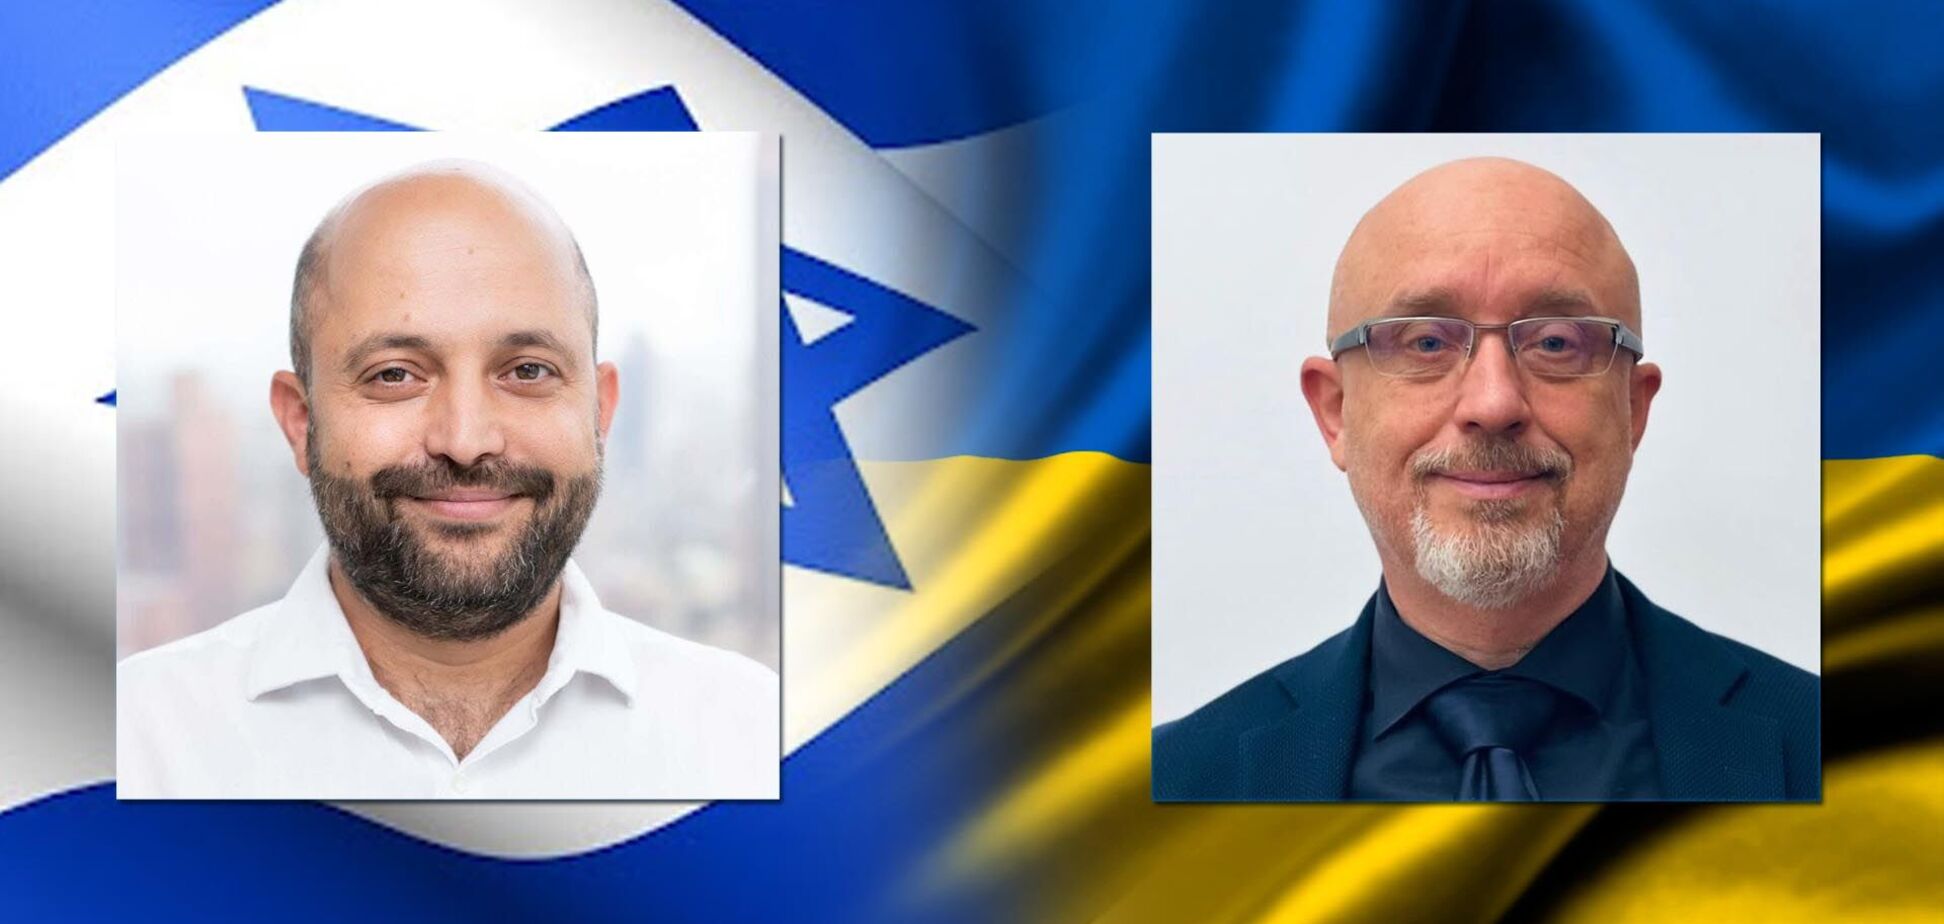 Міністр оборони України Резніков та голова Ради нацбезпеки Ізраїлю Хулата обговорили нагальні питання безпеки